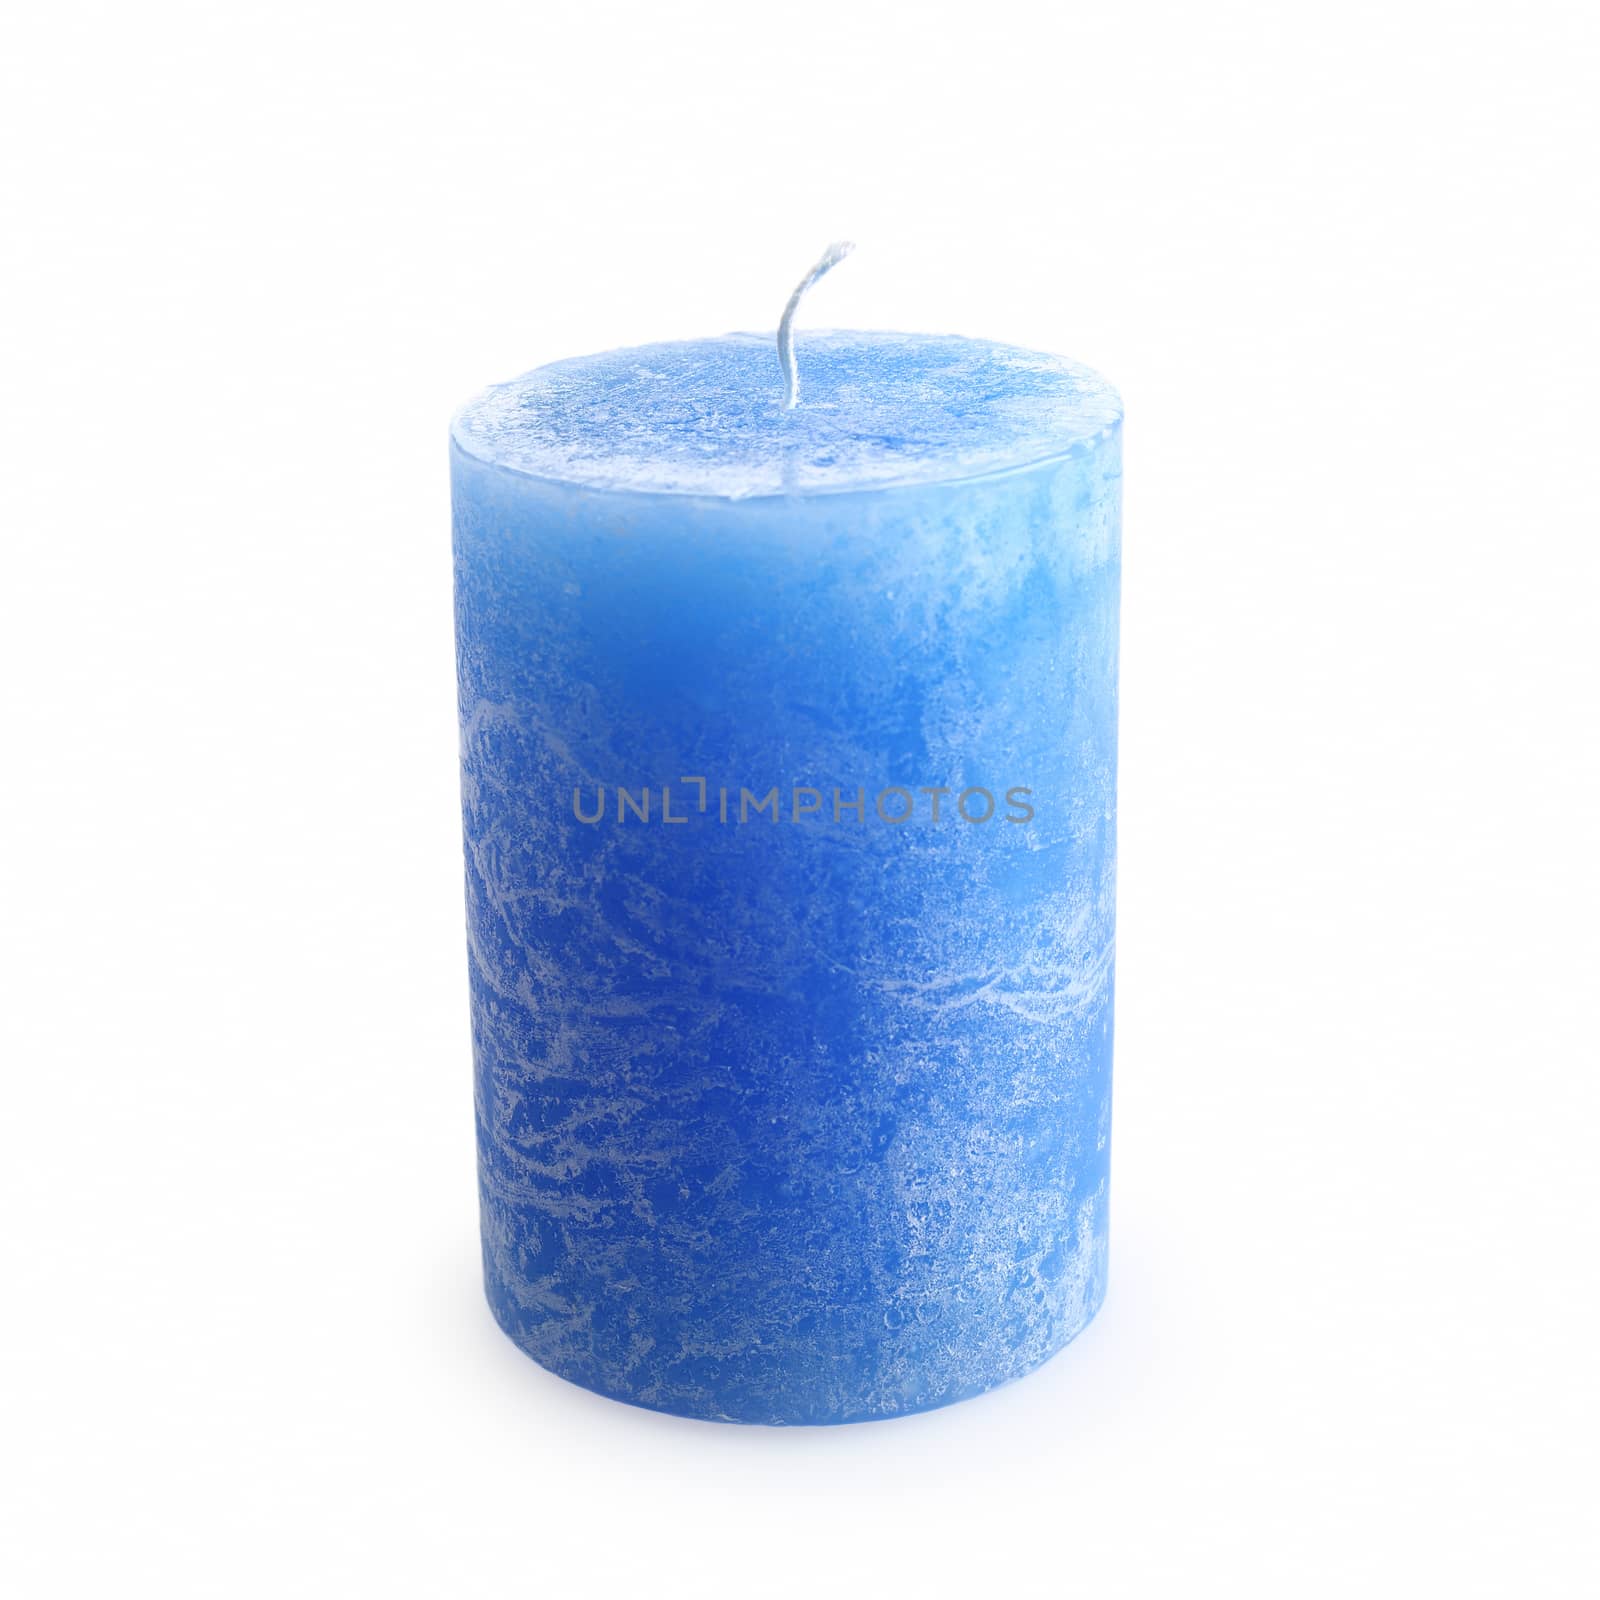 One new blue candle by marynamyshkovska